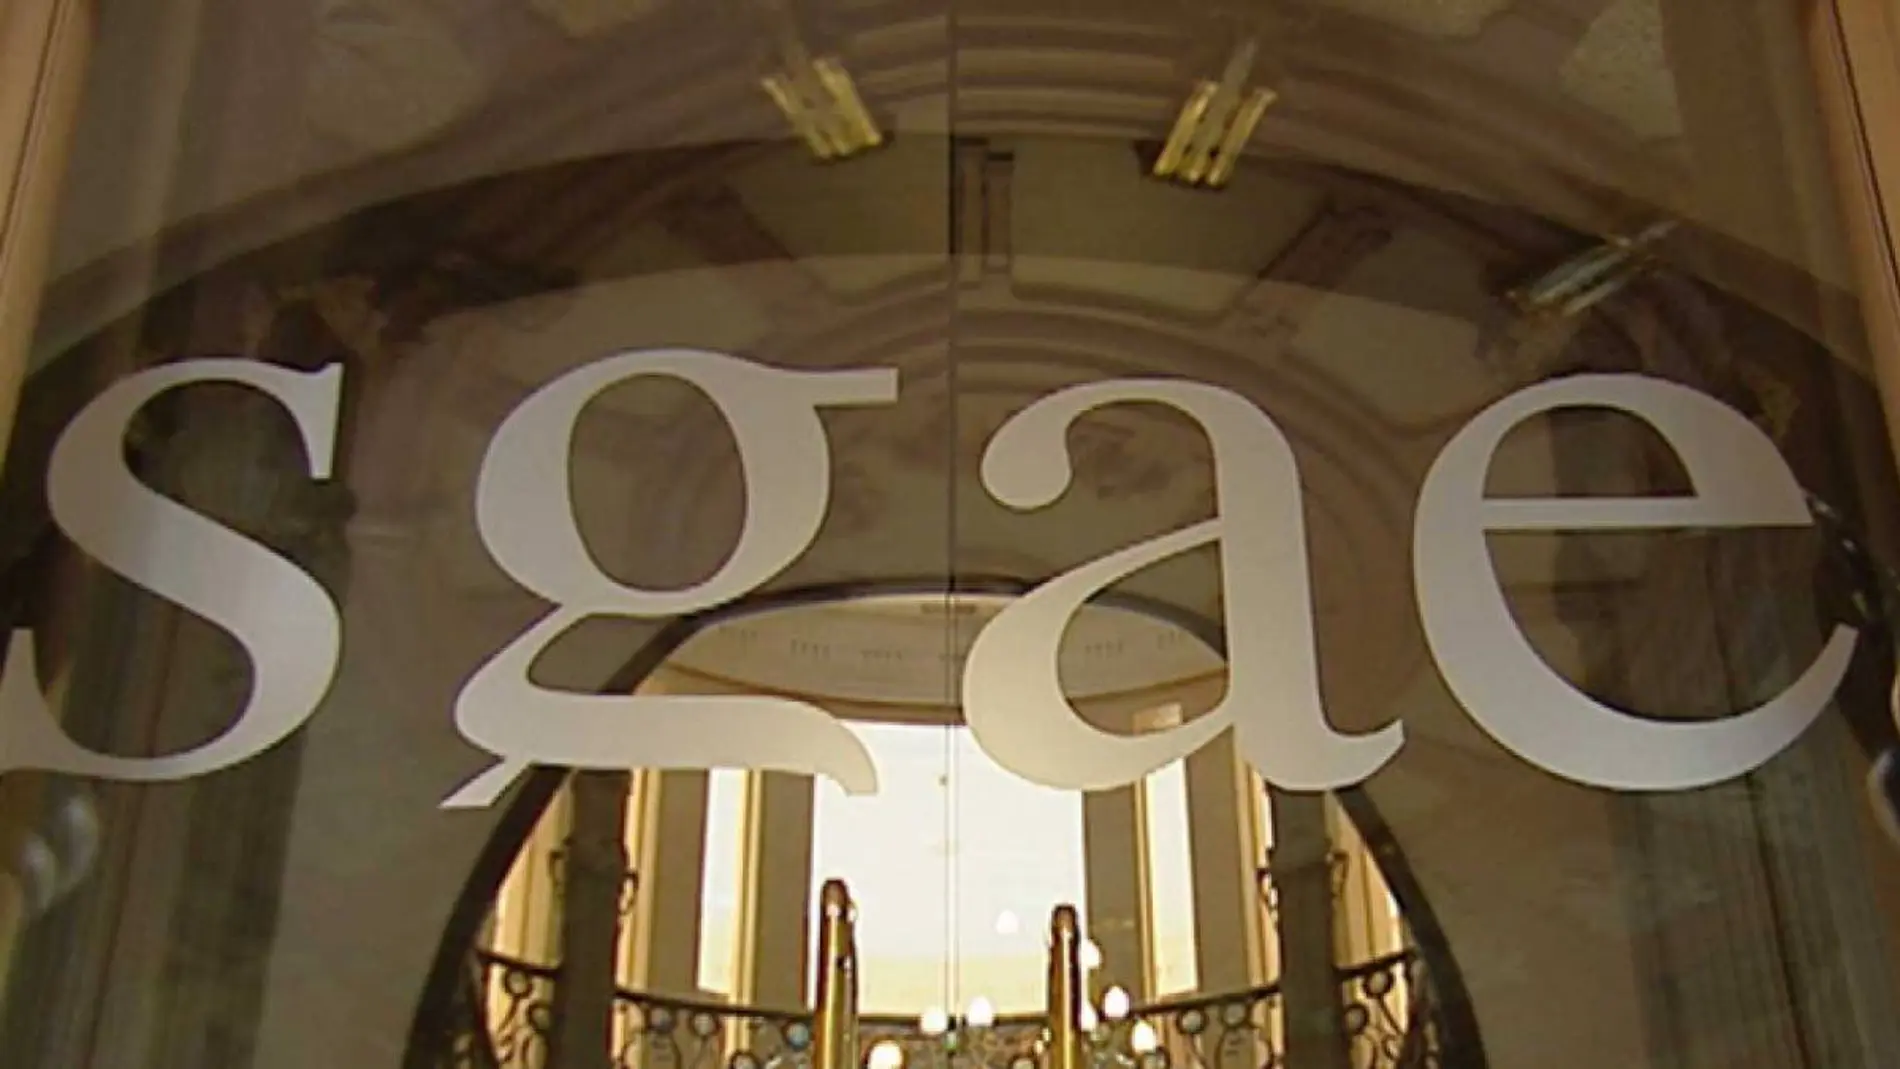 La puerta de entrada al Palacio de Longoria, sede de la Sociedad General de Autores de España (SGAE)